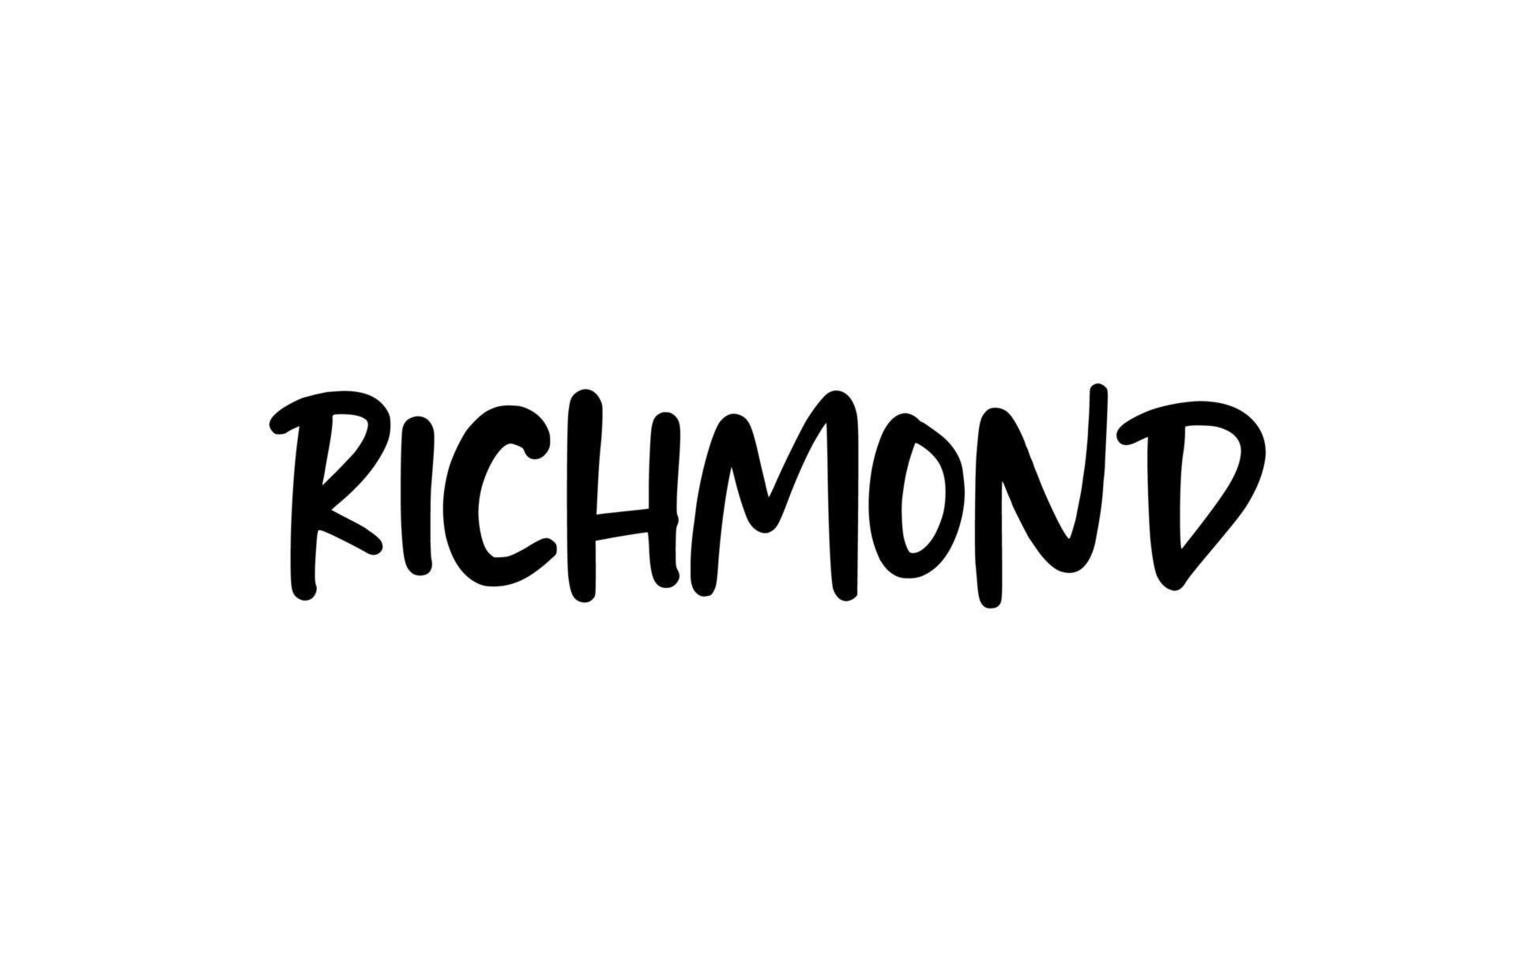 Richmond City tipografia scritta a mano parola testo scritte a mano. testo di calligrafia moderna. colore nero vettore